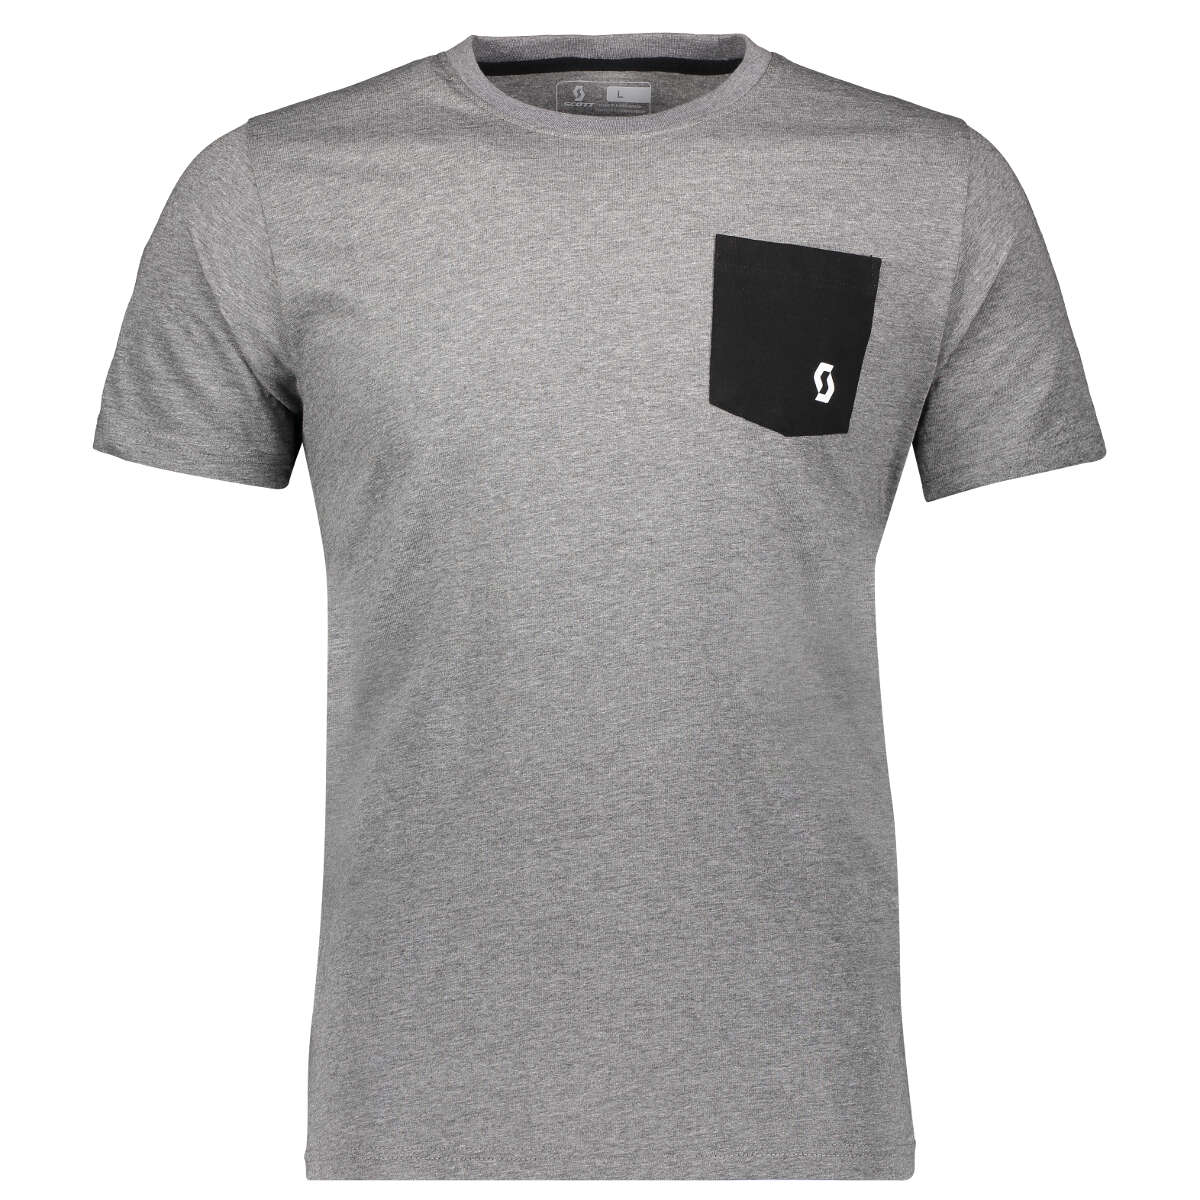 Scott T-Shirt 10 Casual Dunkelgrau meliert